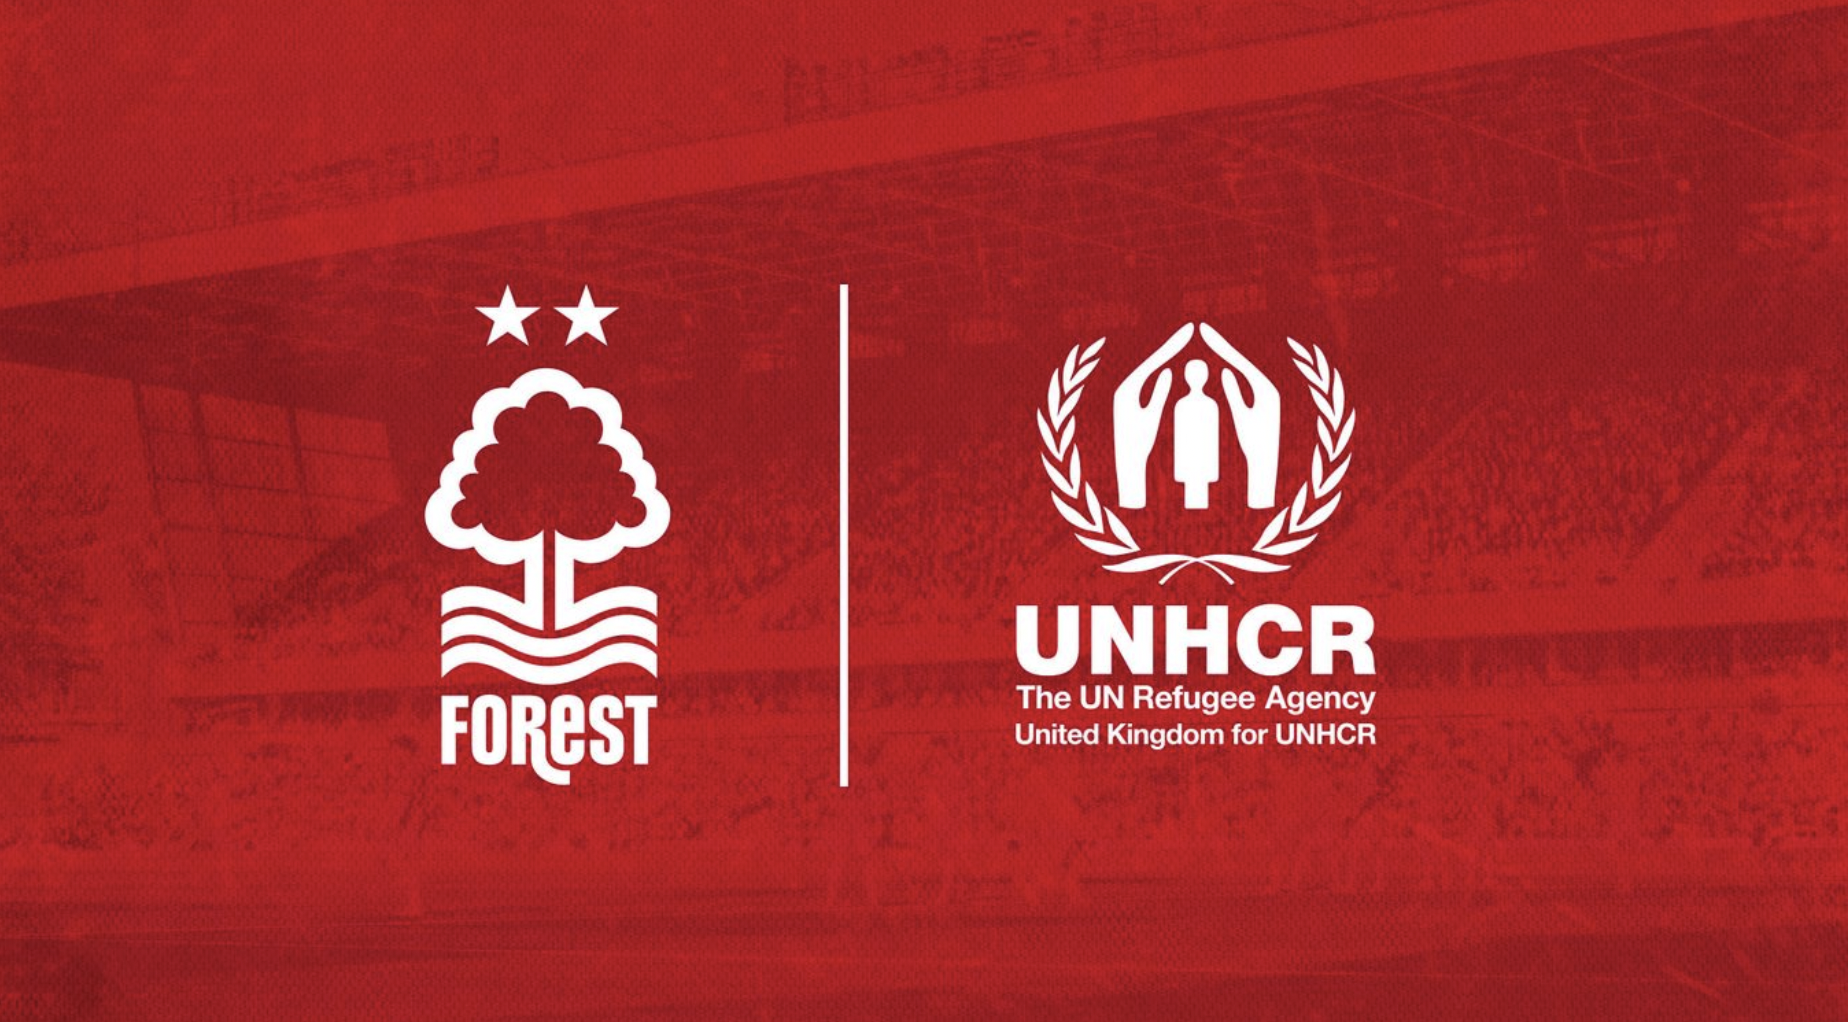 Nottingham Forest spendet Trikot-Sponsoring-Slot an britische Flüchtlingsagentur für UNHCR